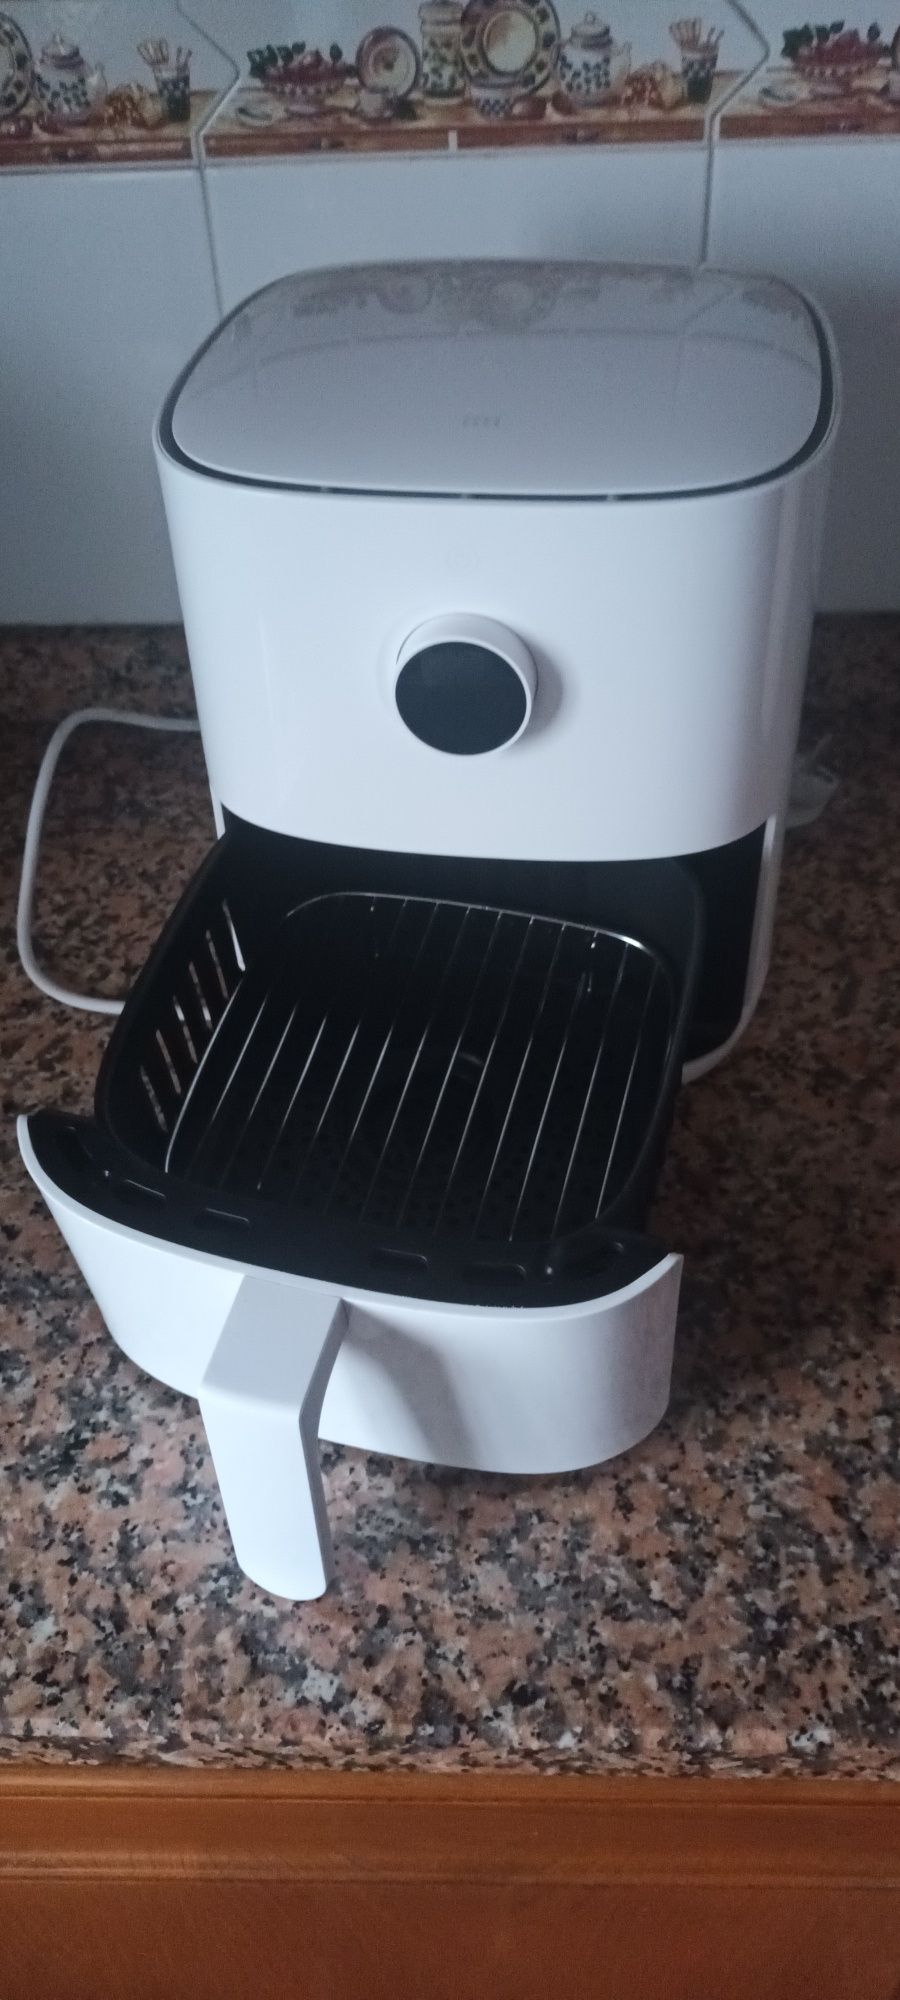 Mi Smart Air Fryer (3.5L)